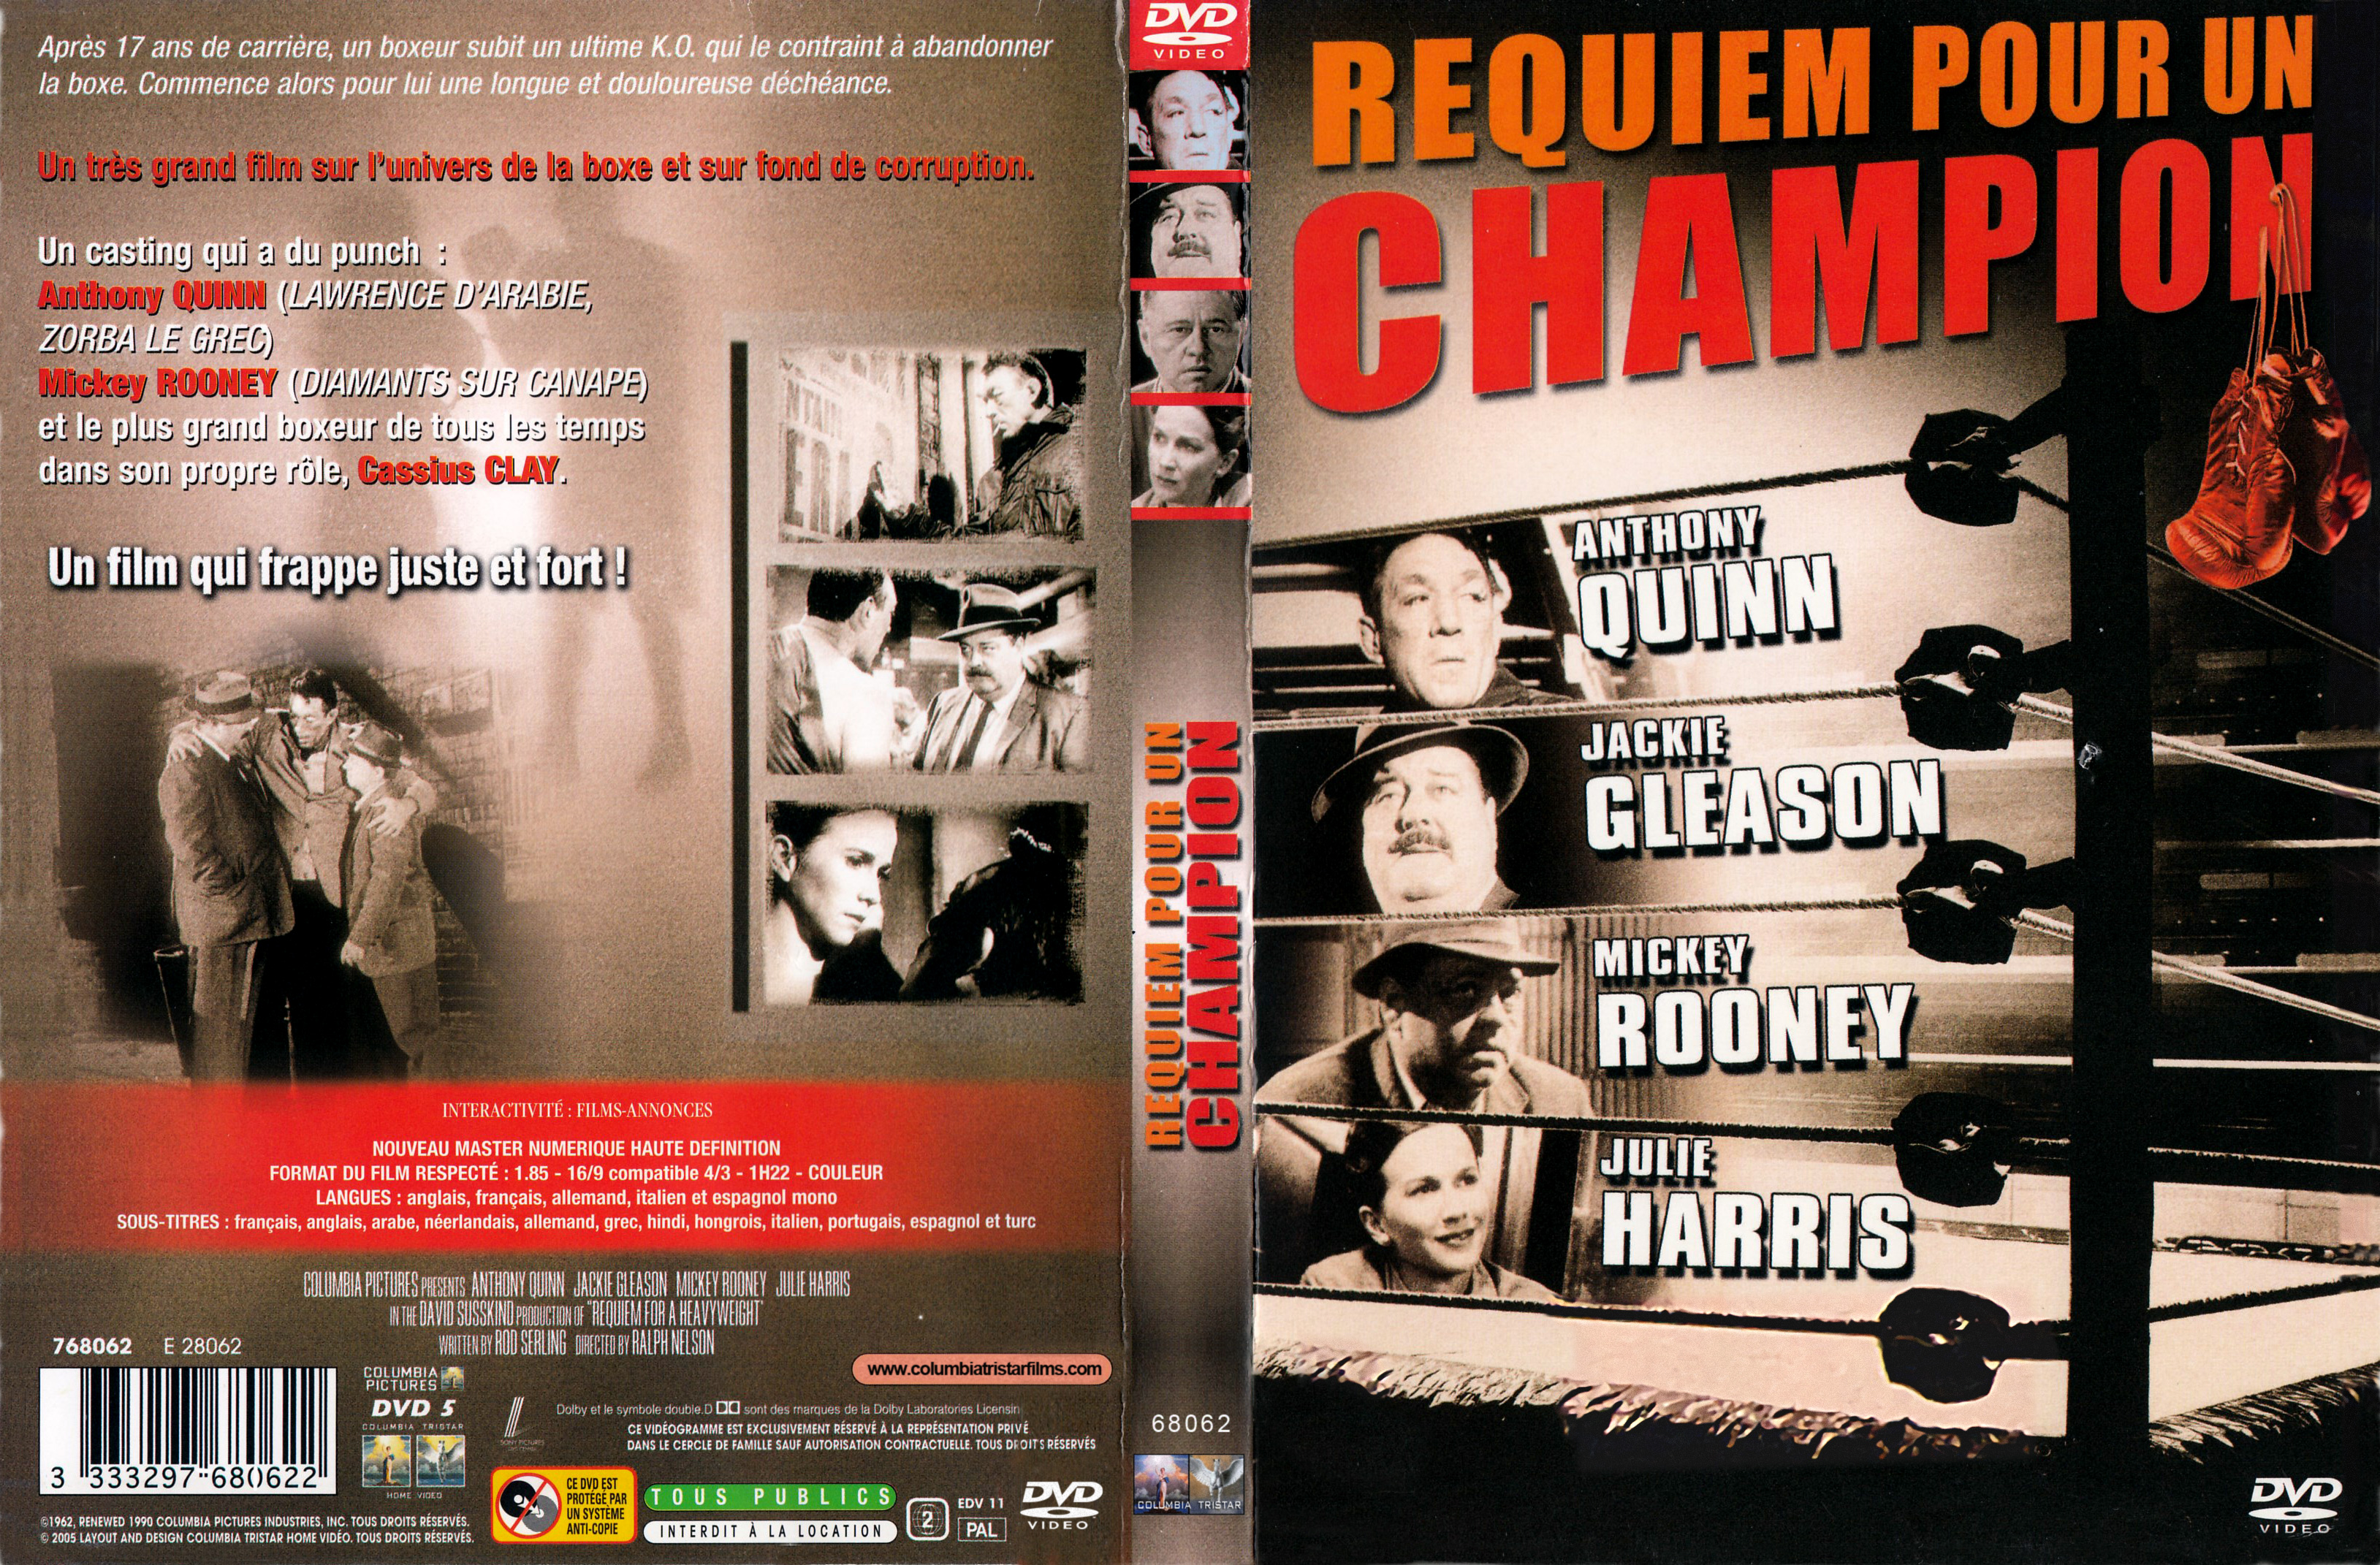 Jaquette DVD Requiem pour un champion